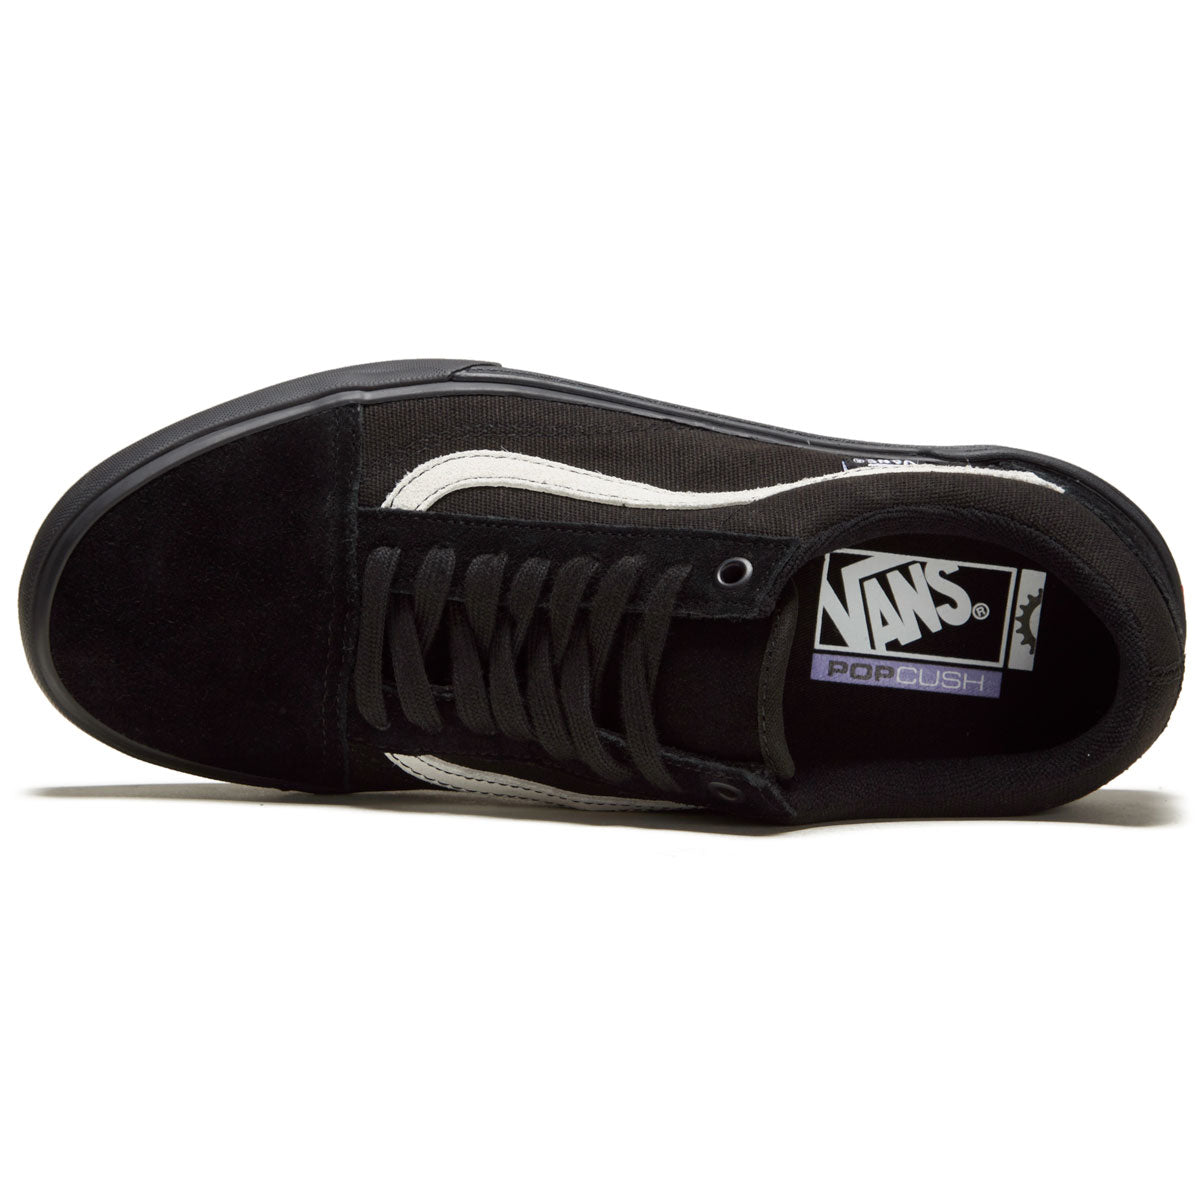 Vans Bmx Old Skool Shoes - Black/Black image 3